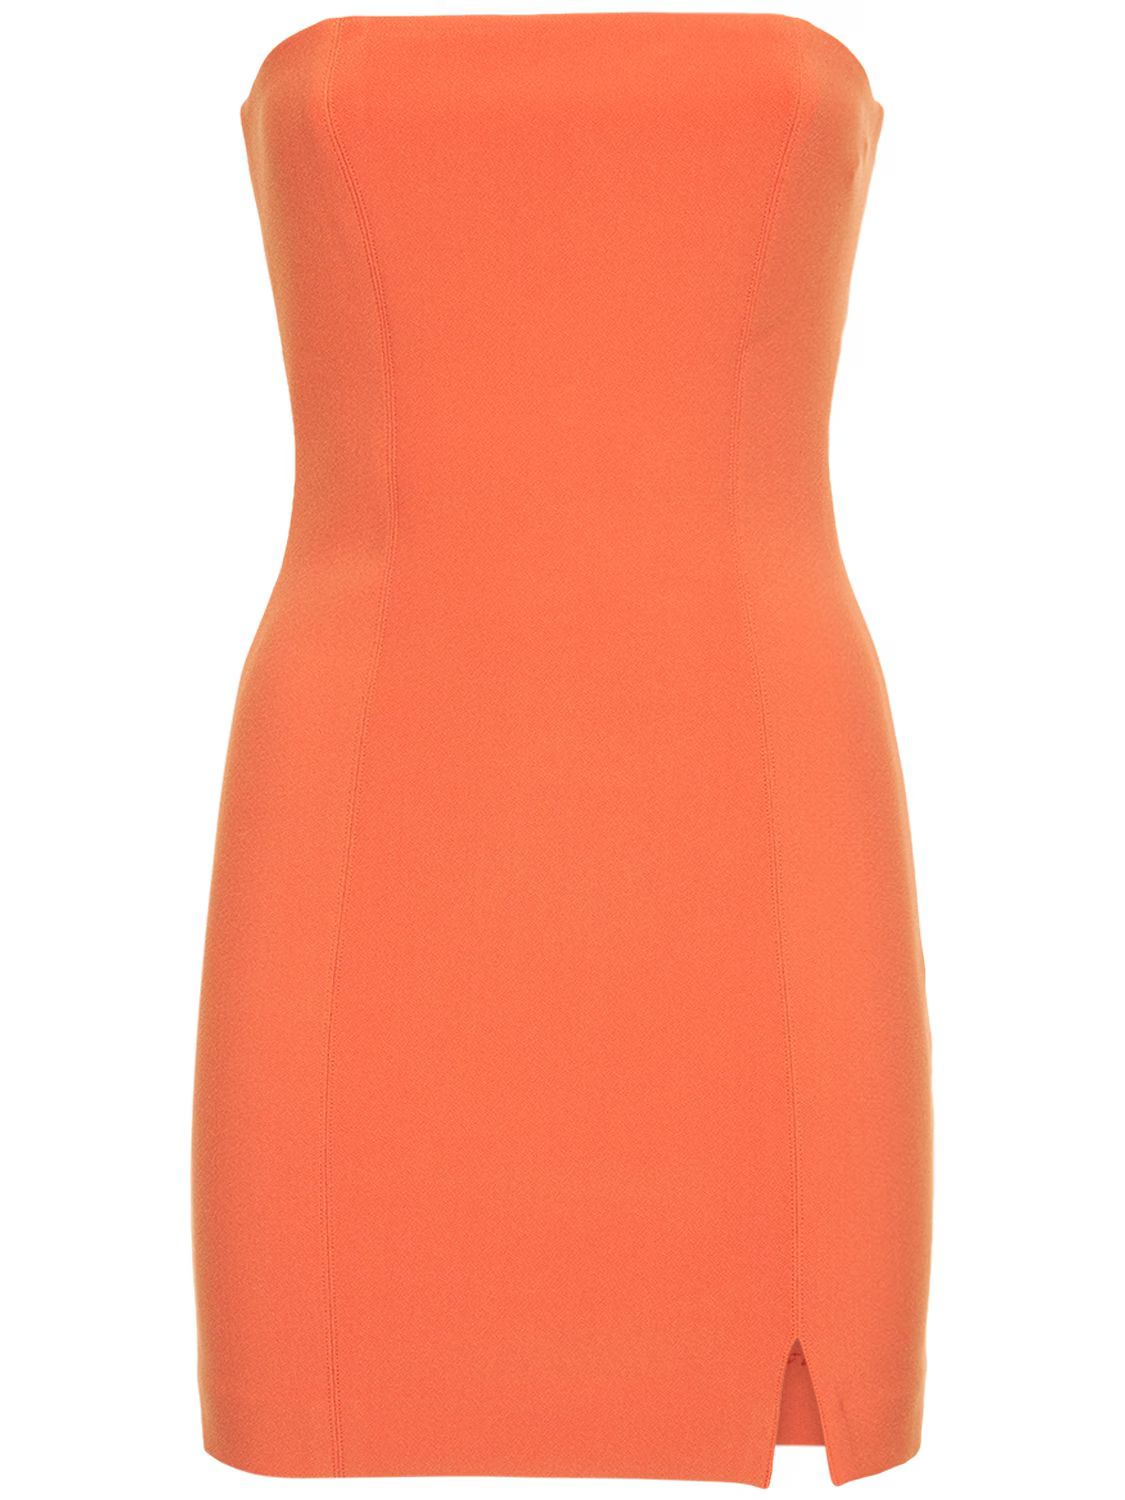 Bec + Bridge - Cicily strapless bonded crepe mini dress - Orange | Luisaviaroma | Luisaviaroma